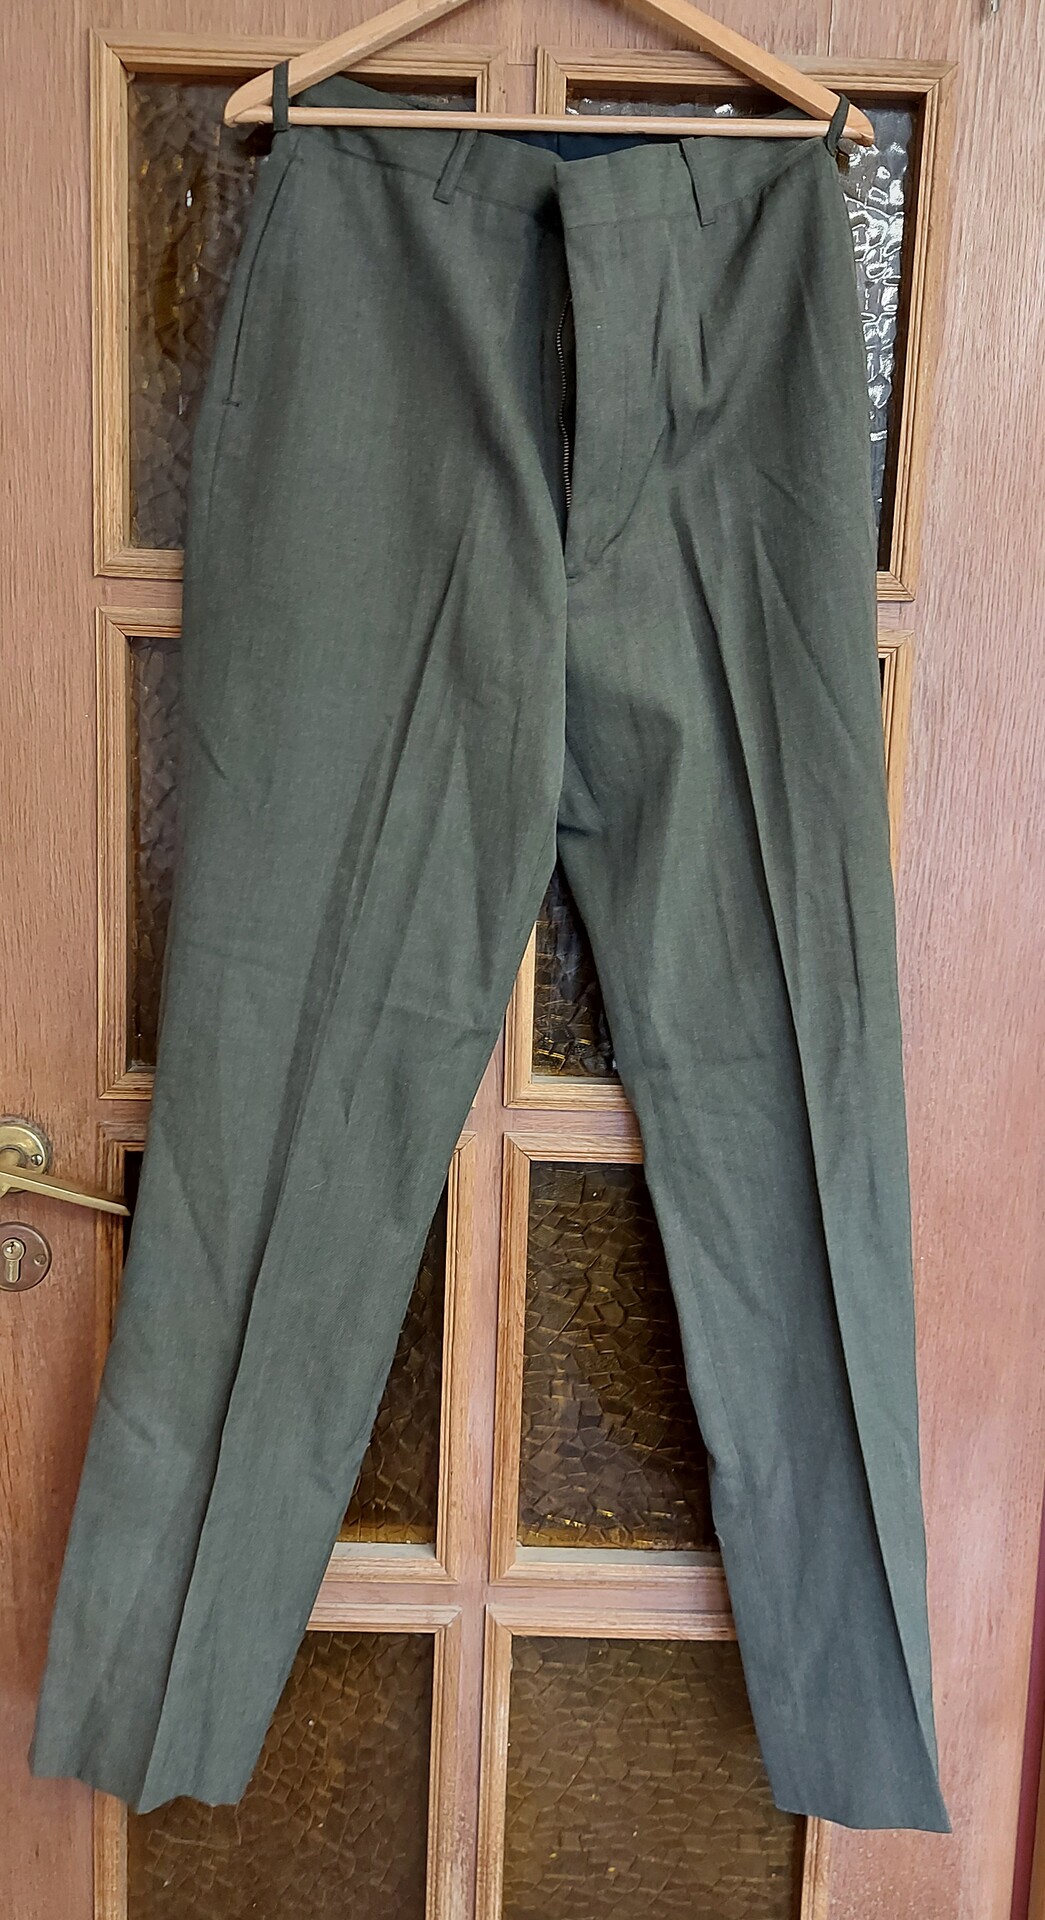 Spodnie Munduru wyjsciowego USMC - Zielone - 32R